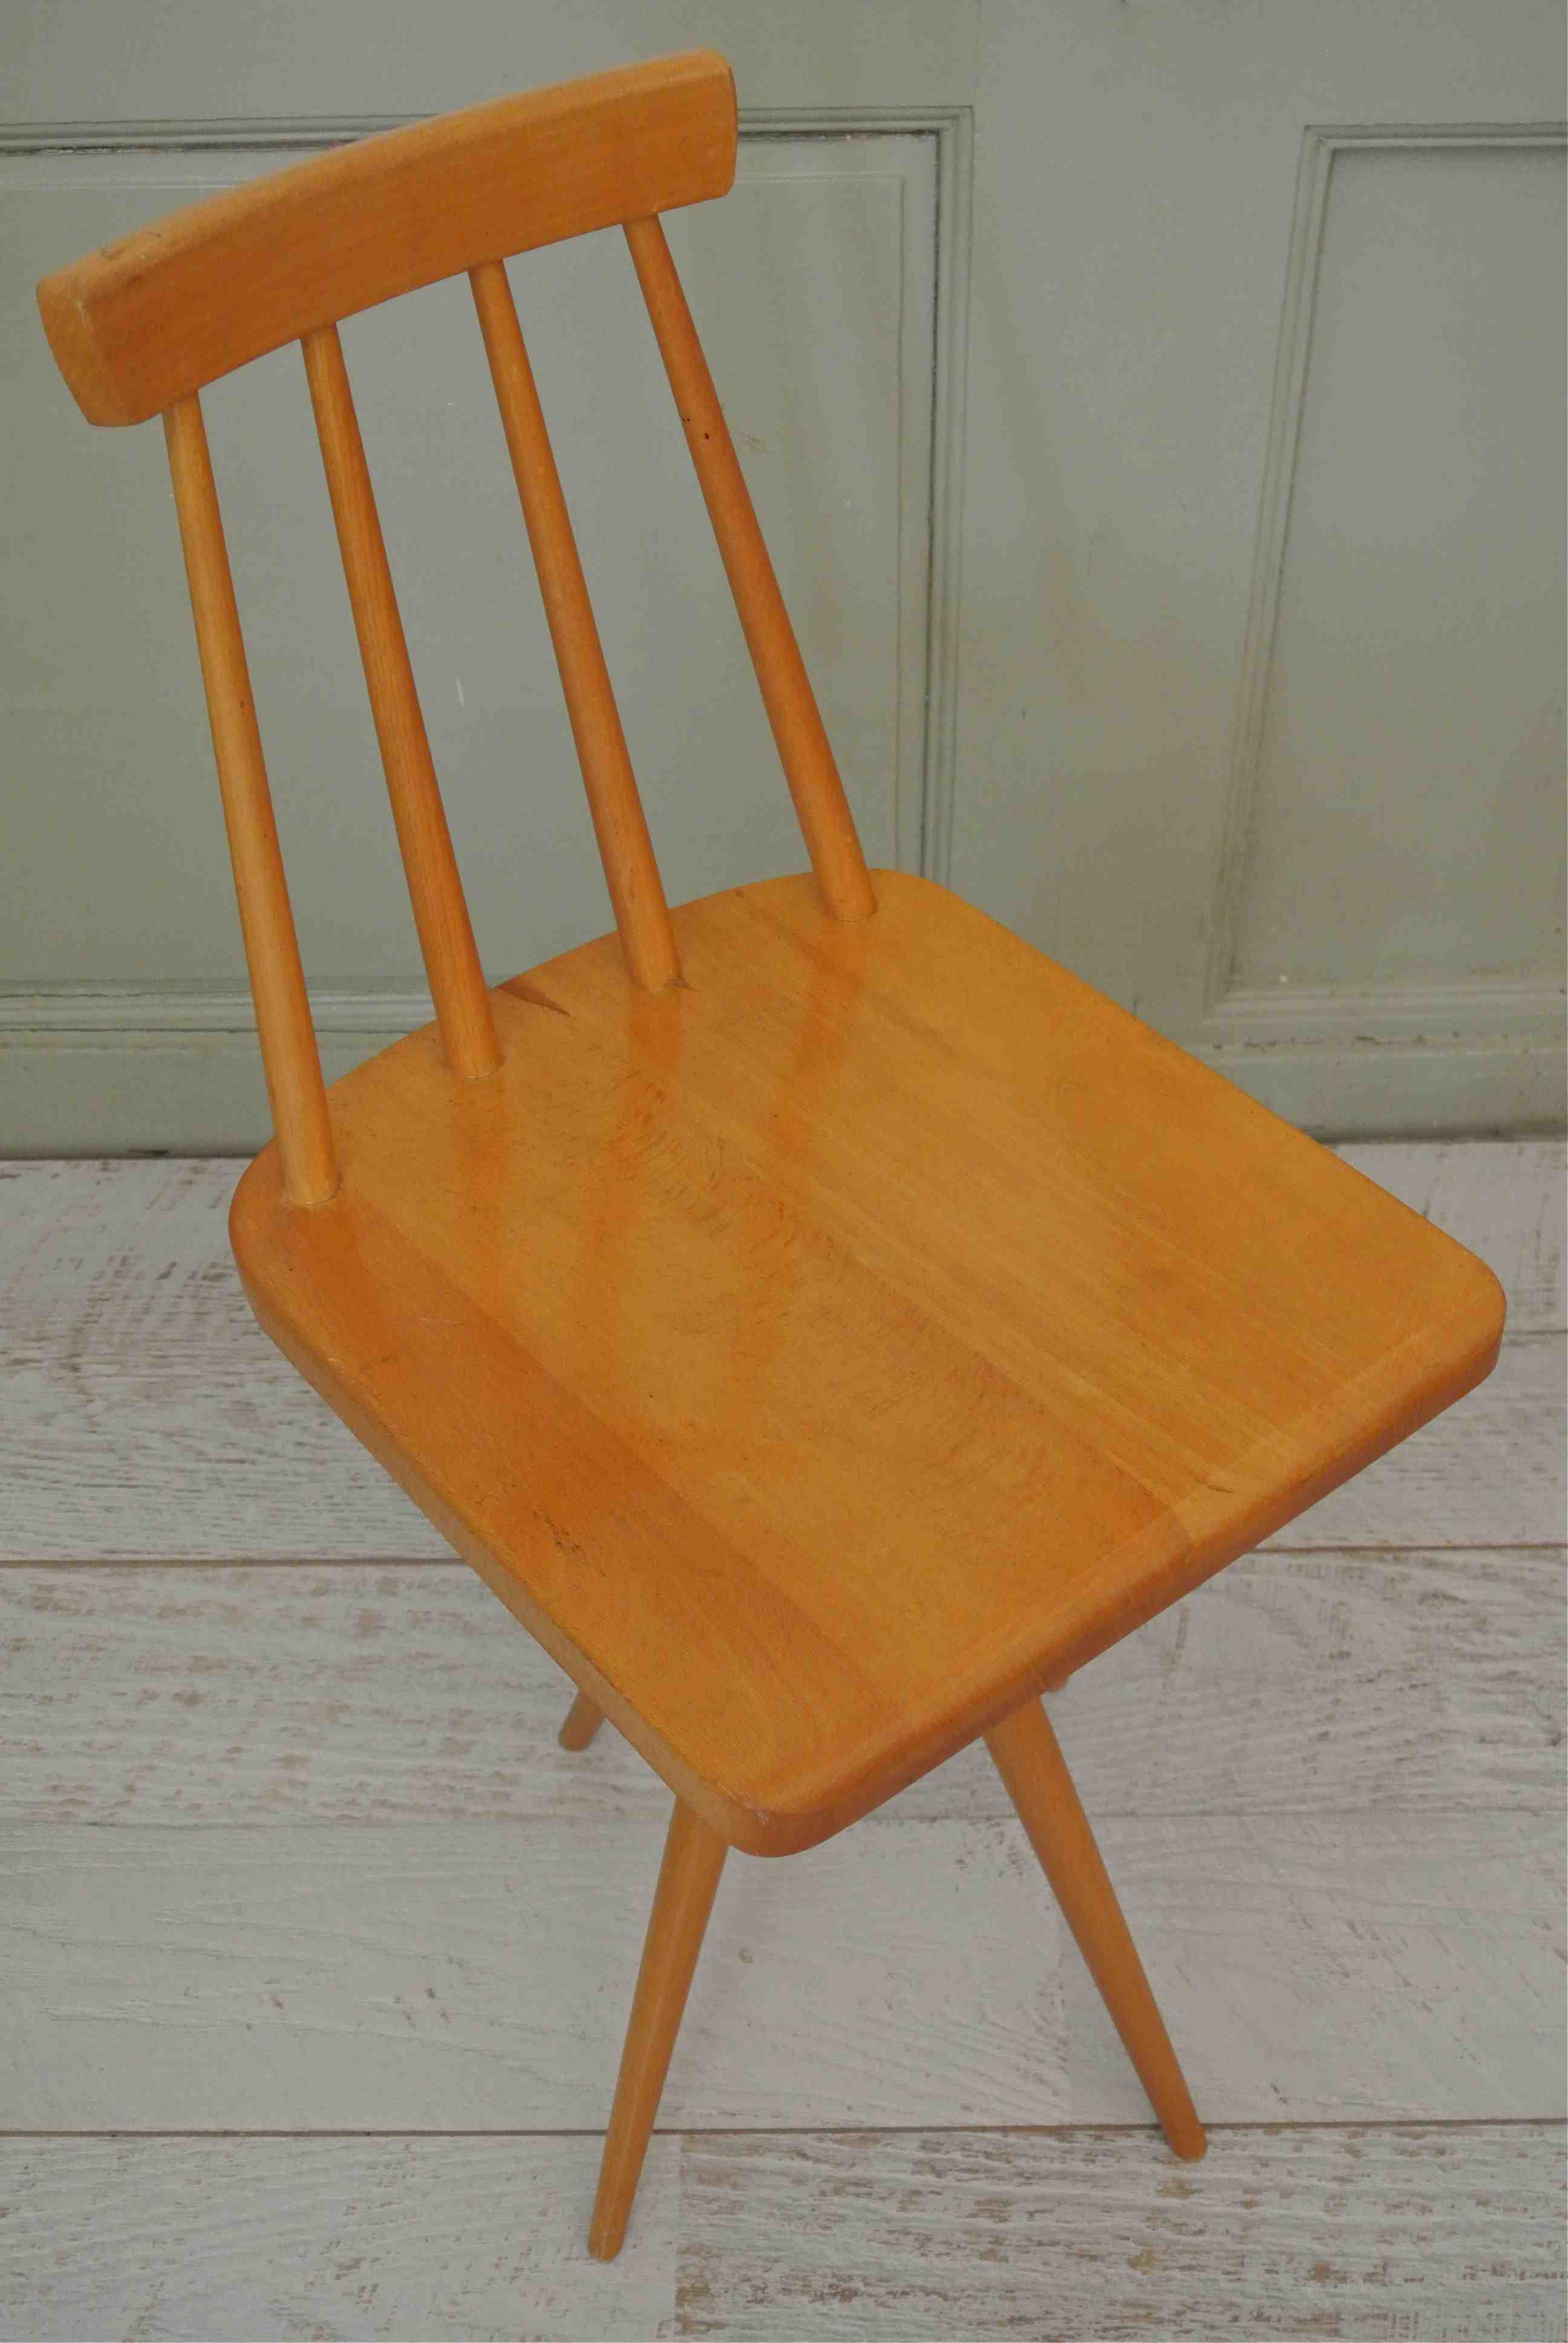 Slavia Vintage chaise enfant en bois vintage des années 60 dossier à barreaux pivotante modèle "Karussel" style scandinave photo assise